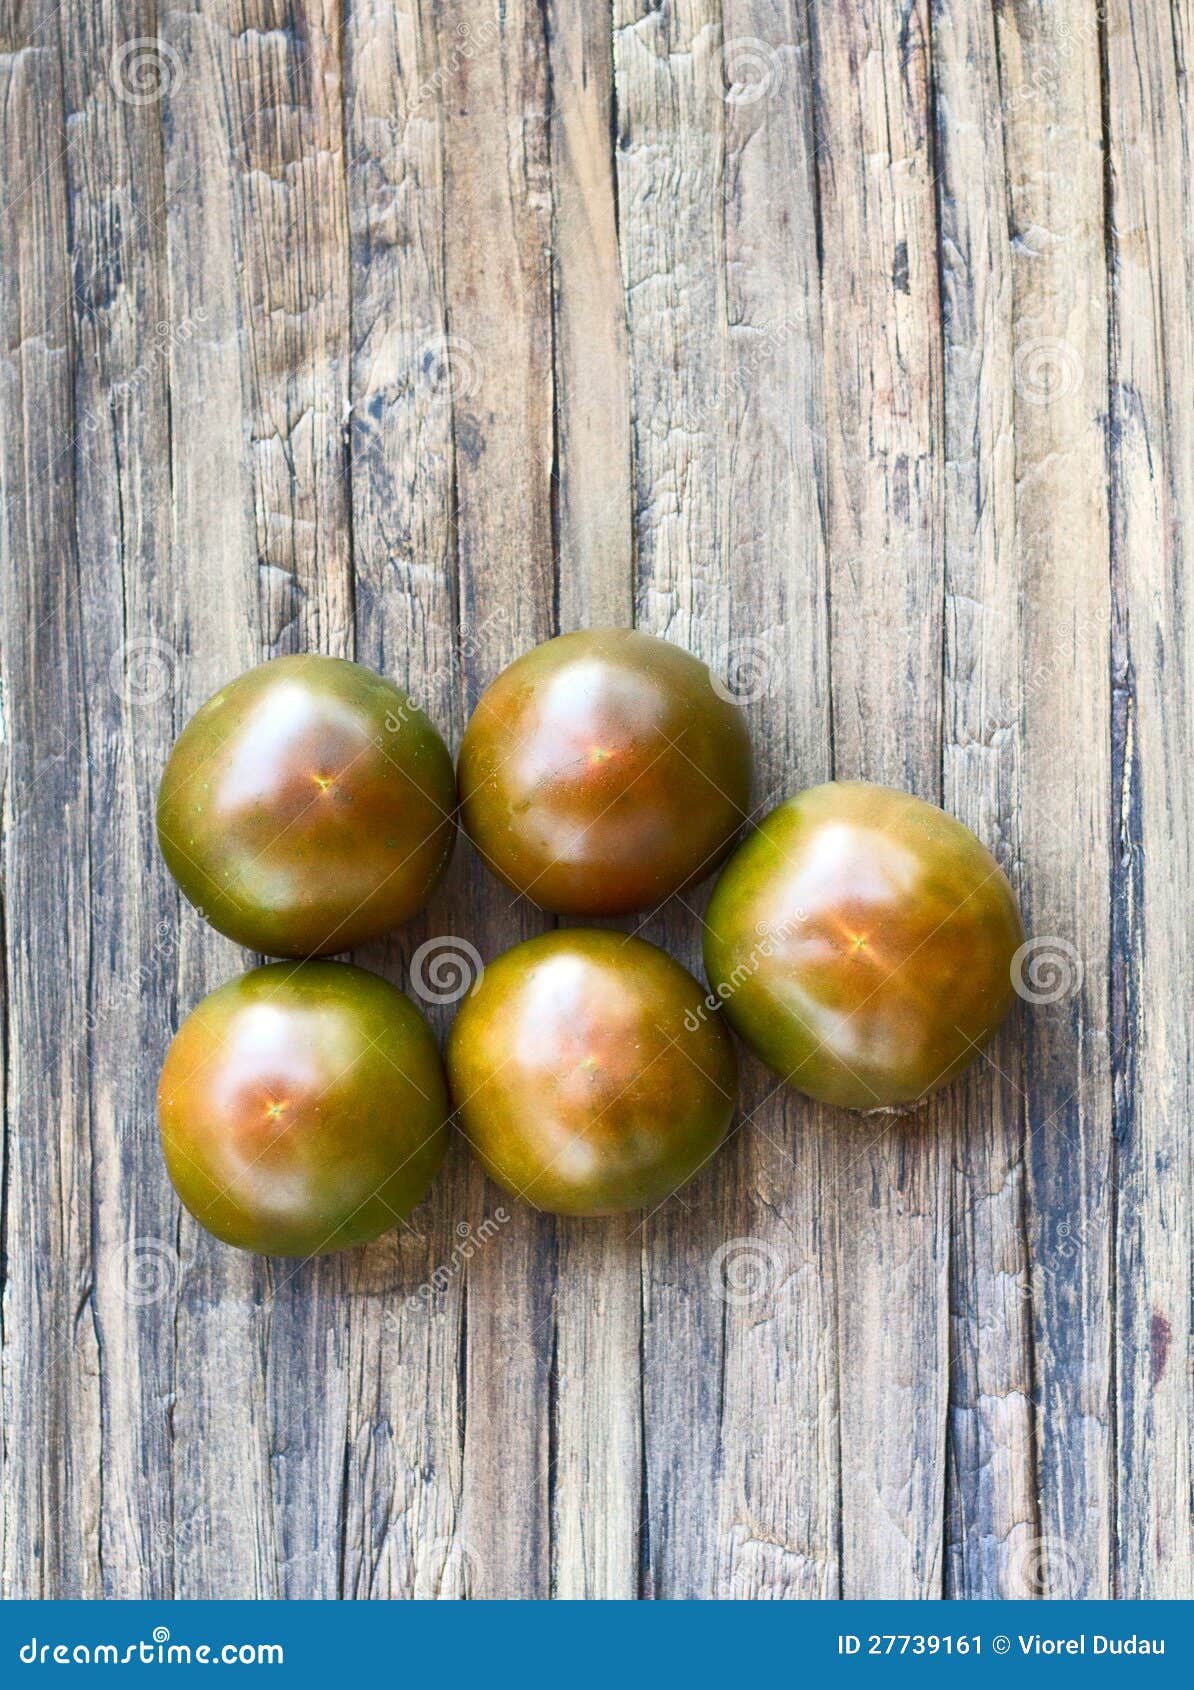 black kumato tomatoes